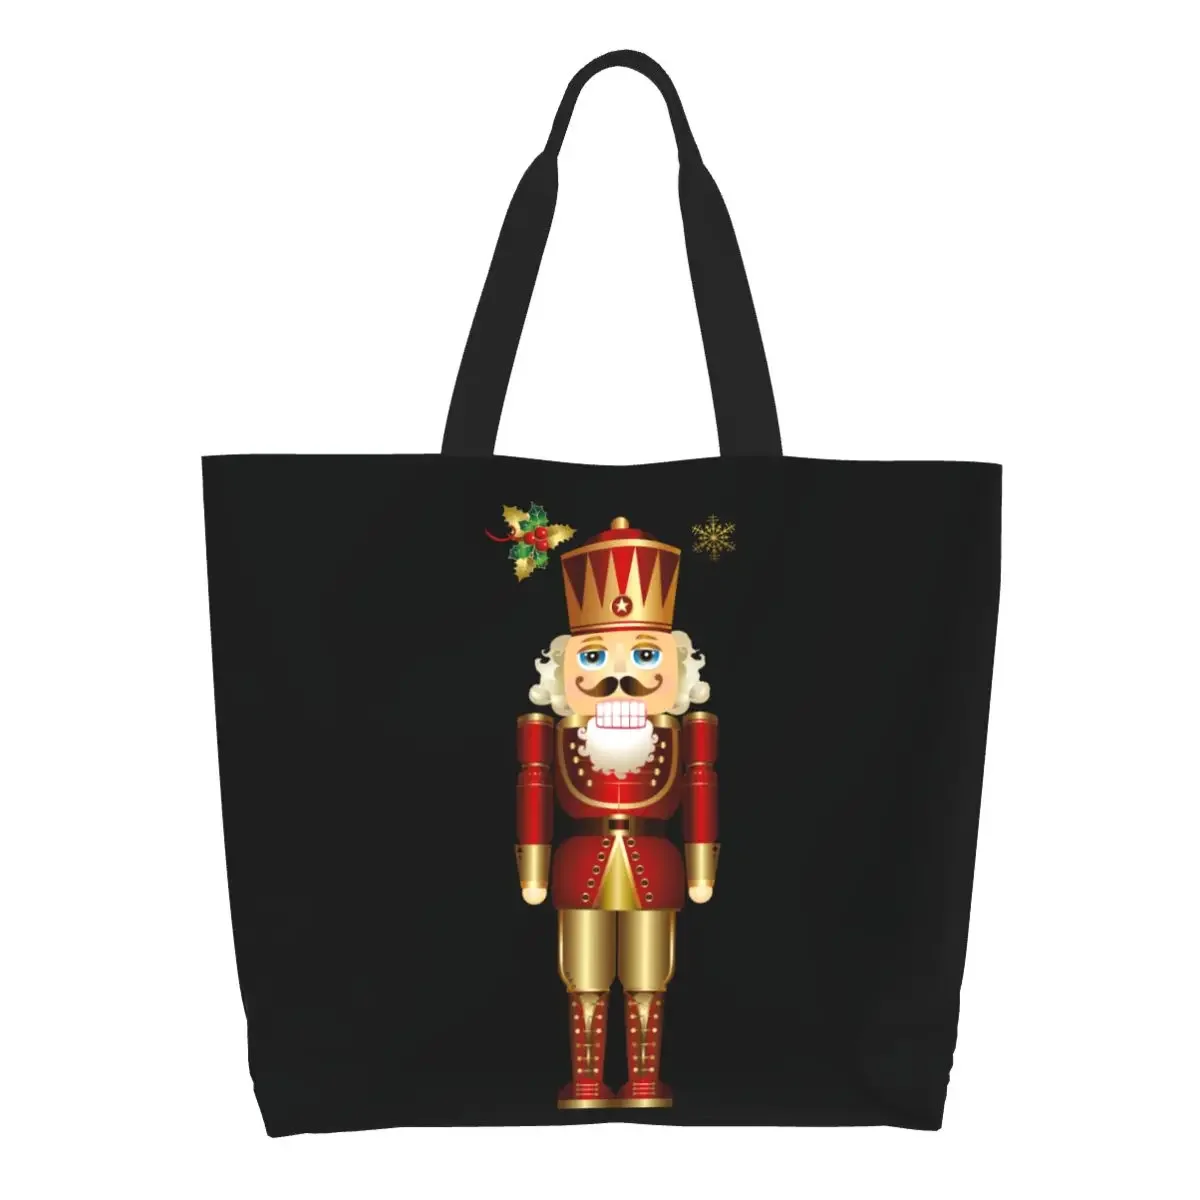 

Сумка-тоут для покупок в продуктовых магазинах, холщовая вместительная сумочка на плечо с изображением персонажей из орехов, солдат, короля